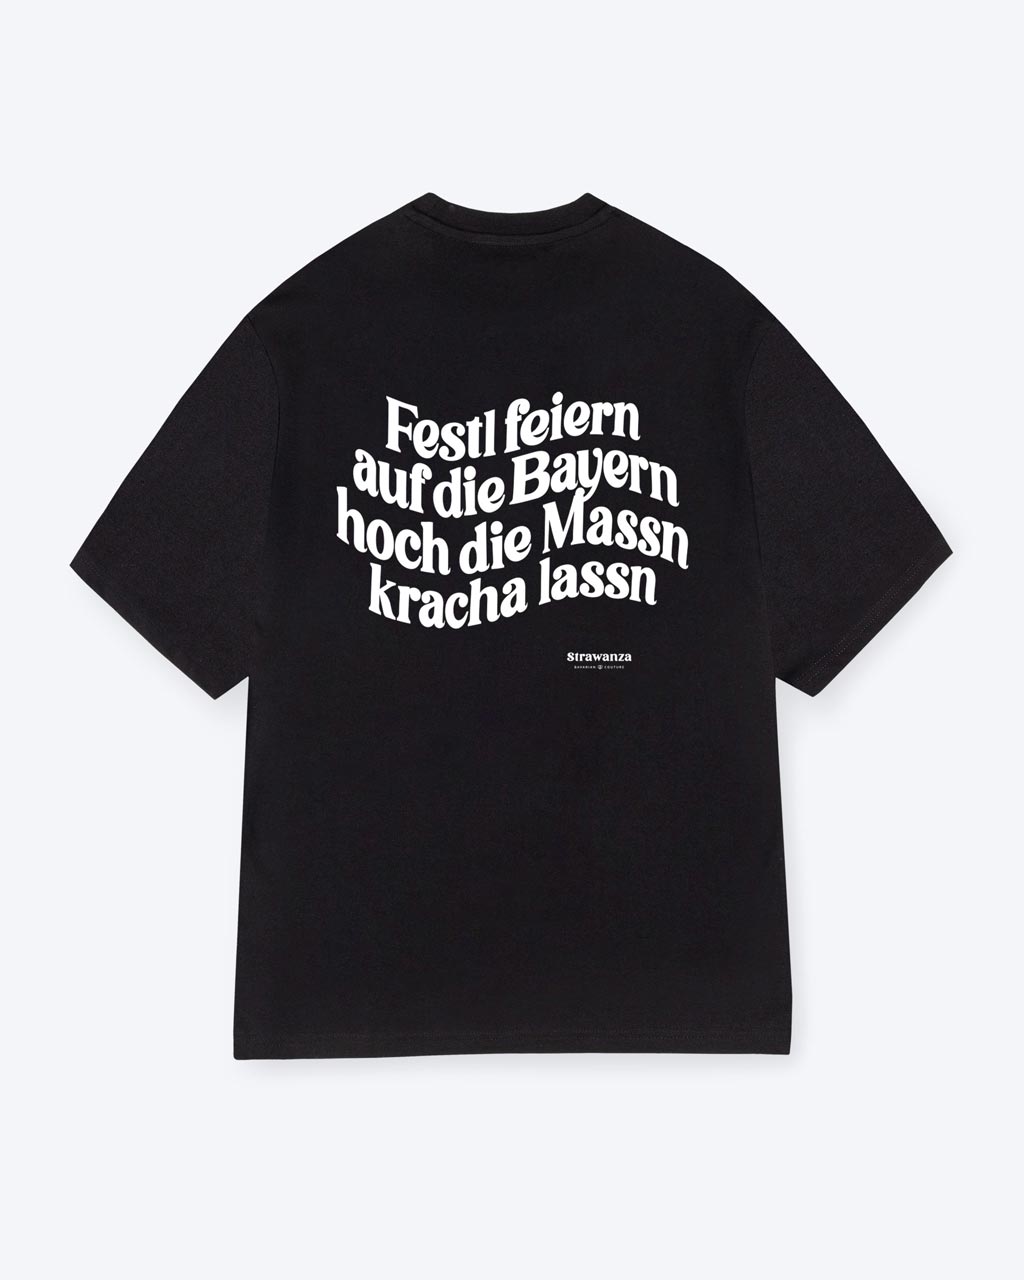 Ein schwarzes T-Shirt mit einem weißen "Festl feiern auf die Bayern hoch die Massn kracha lassn" Schriftzug als  Backprint Motiv. 